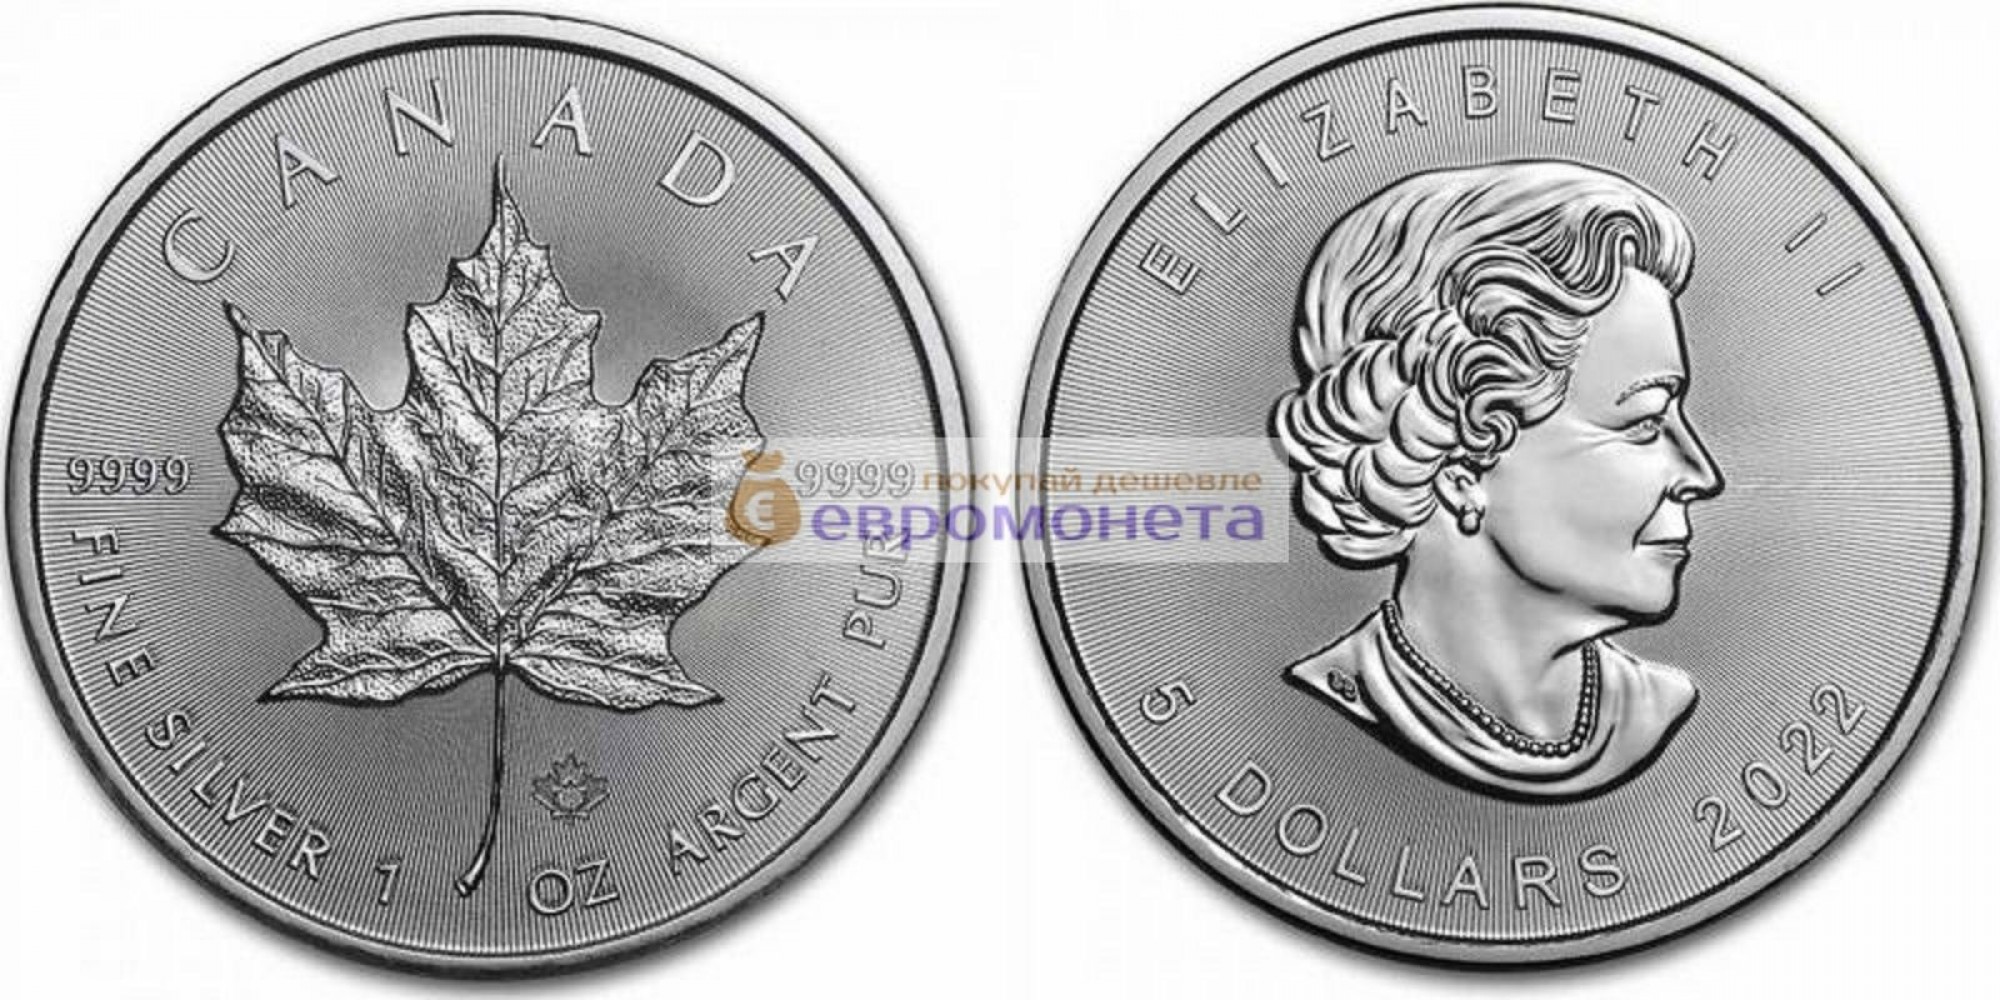 Канада 5 долларов 2022 год Кленовый лист (маленький лист под большим). Серебро унция 999 пробы